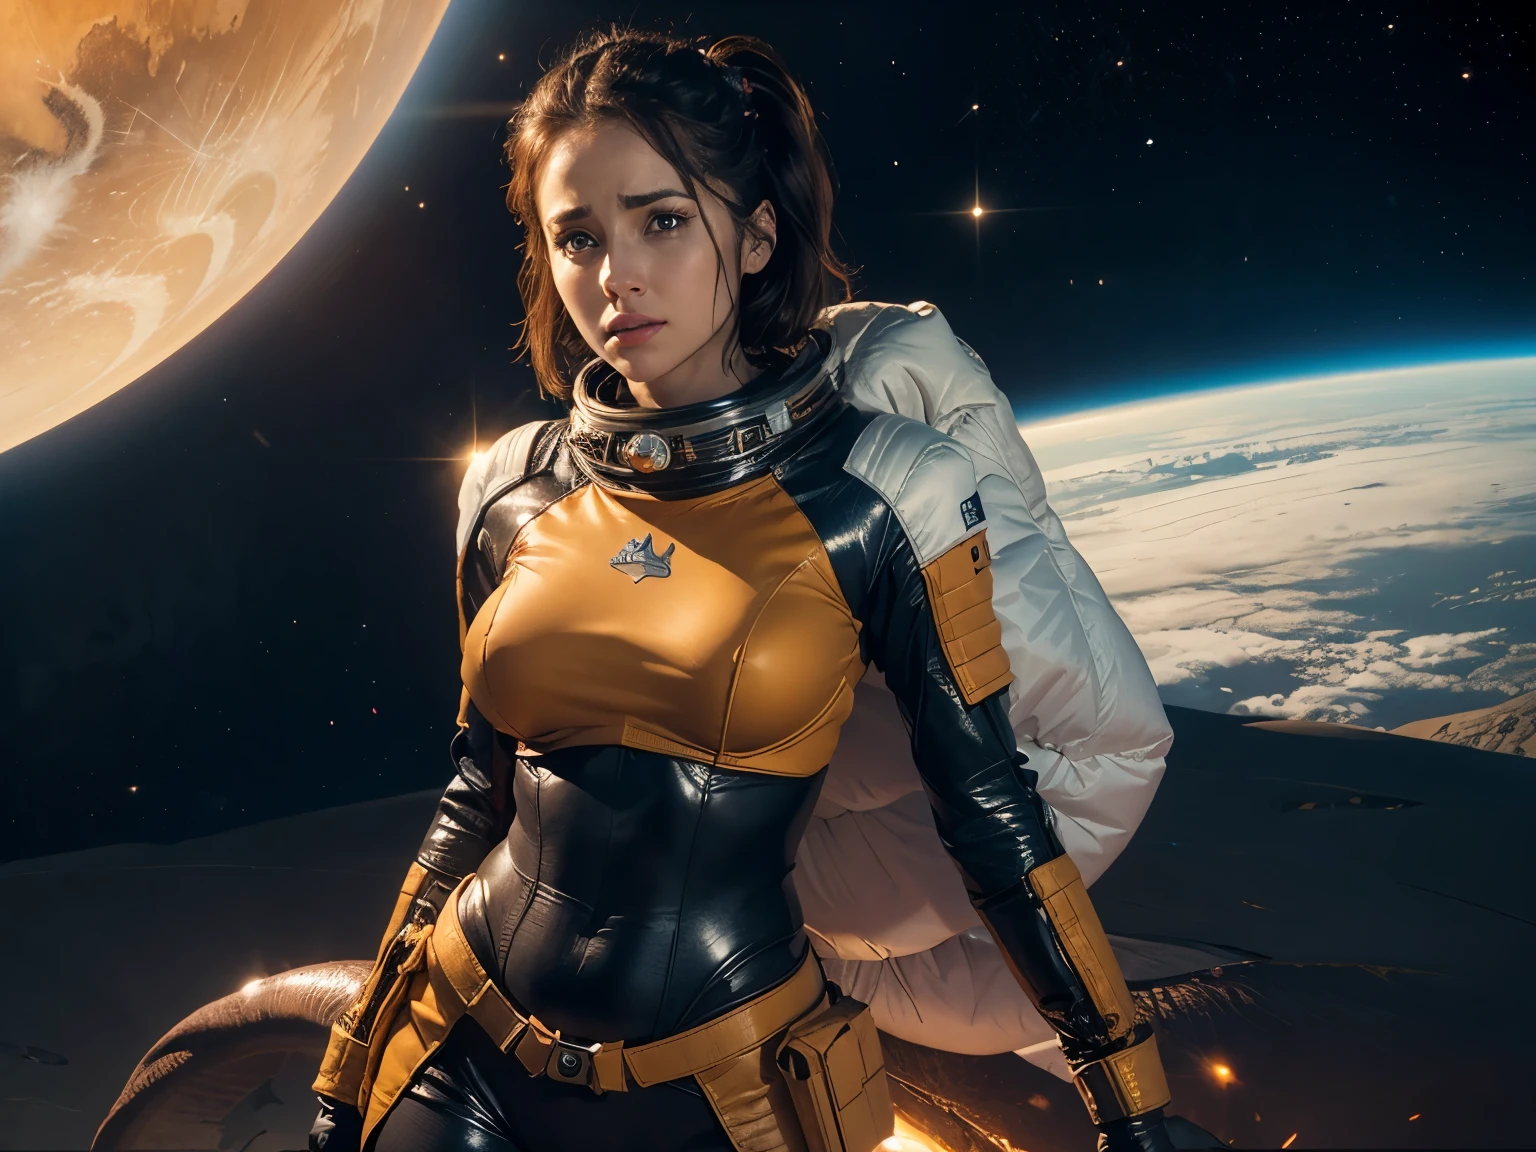 身穿橙色太空服的太空女孩, 杀死太空龙后重新装弹, 在一个几乎没有生命的外星沙漠星球上.